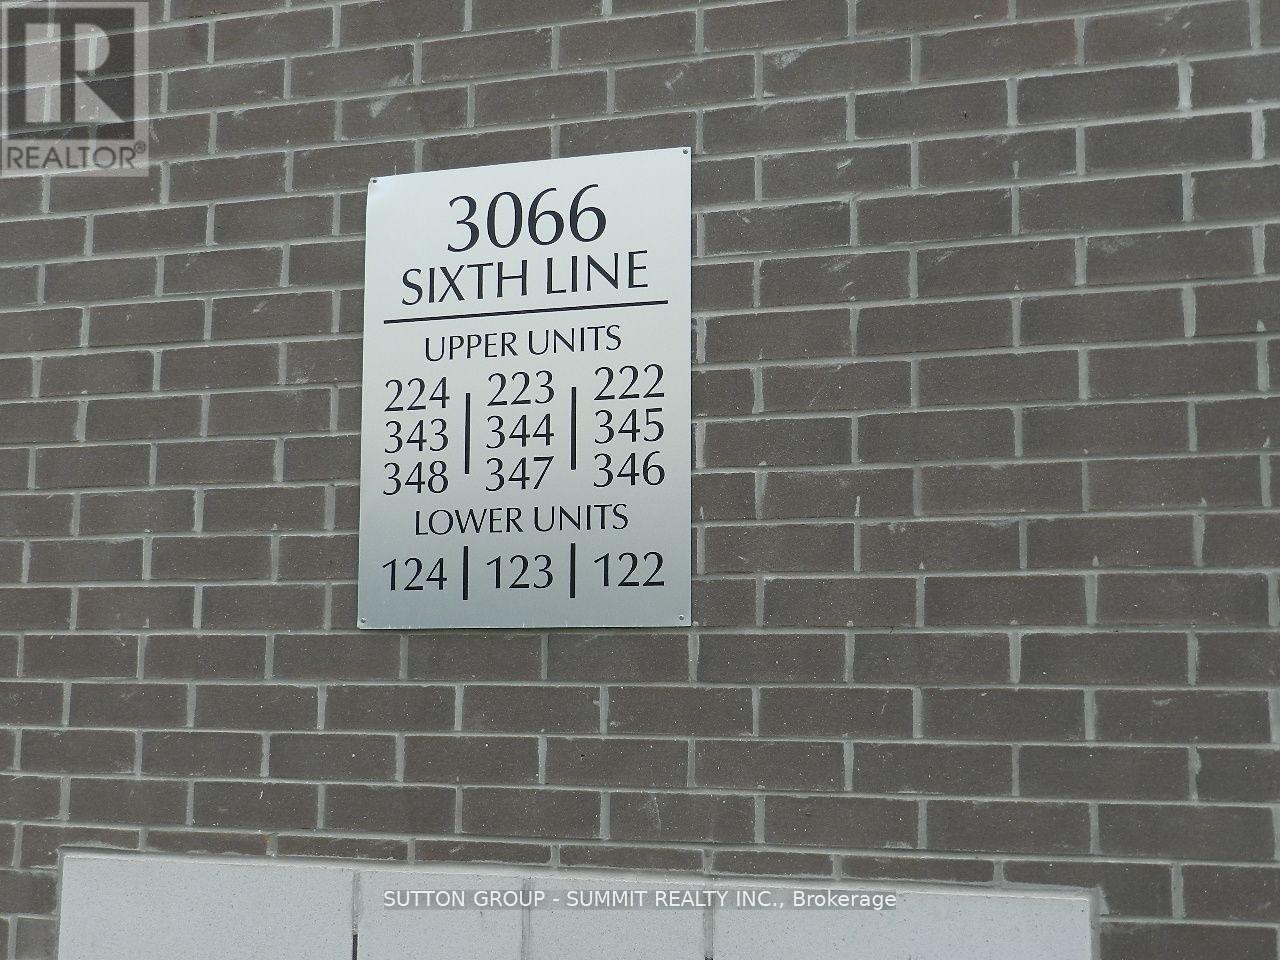 344 - 3066 SIXTH LINE, oakville, Ontario